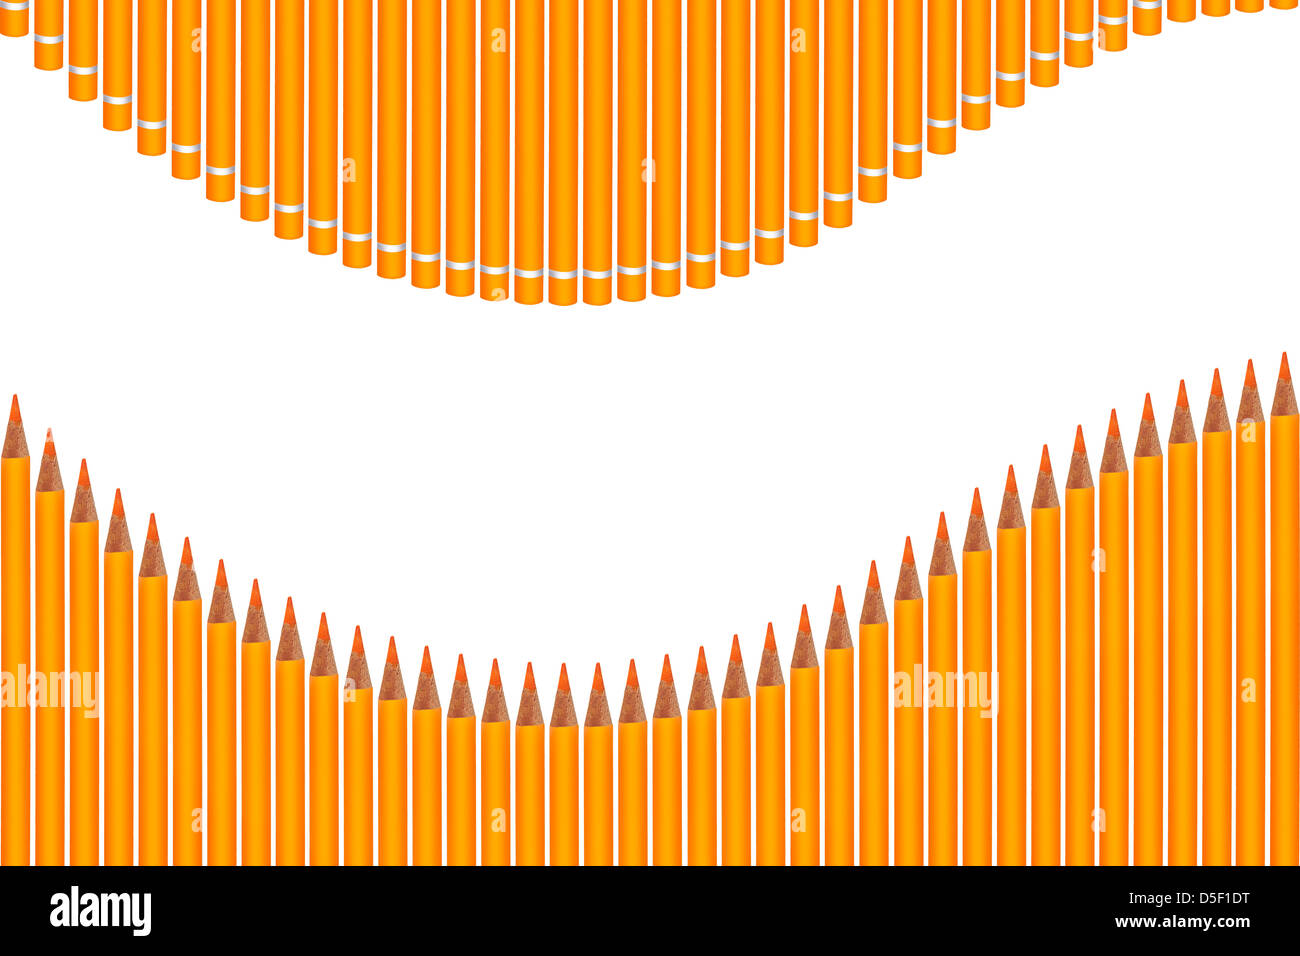 Farbige Stifte angeordnet als Welle mit Text freier Speicherplatz Stockfoto